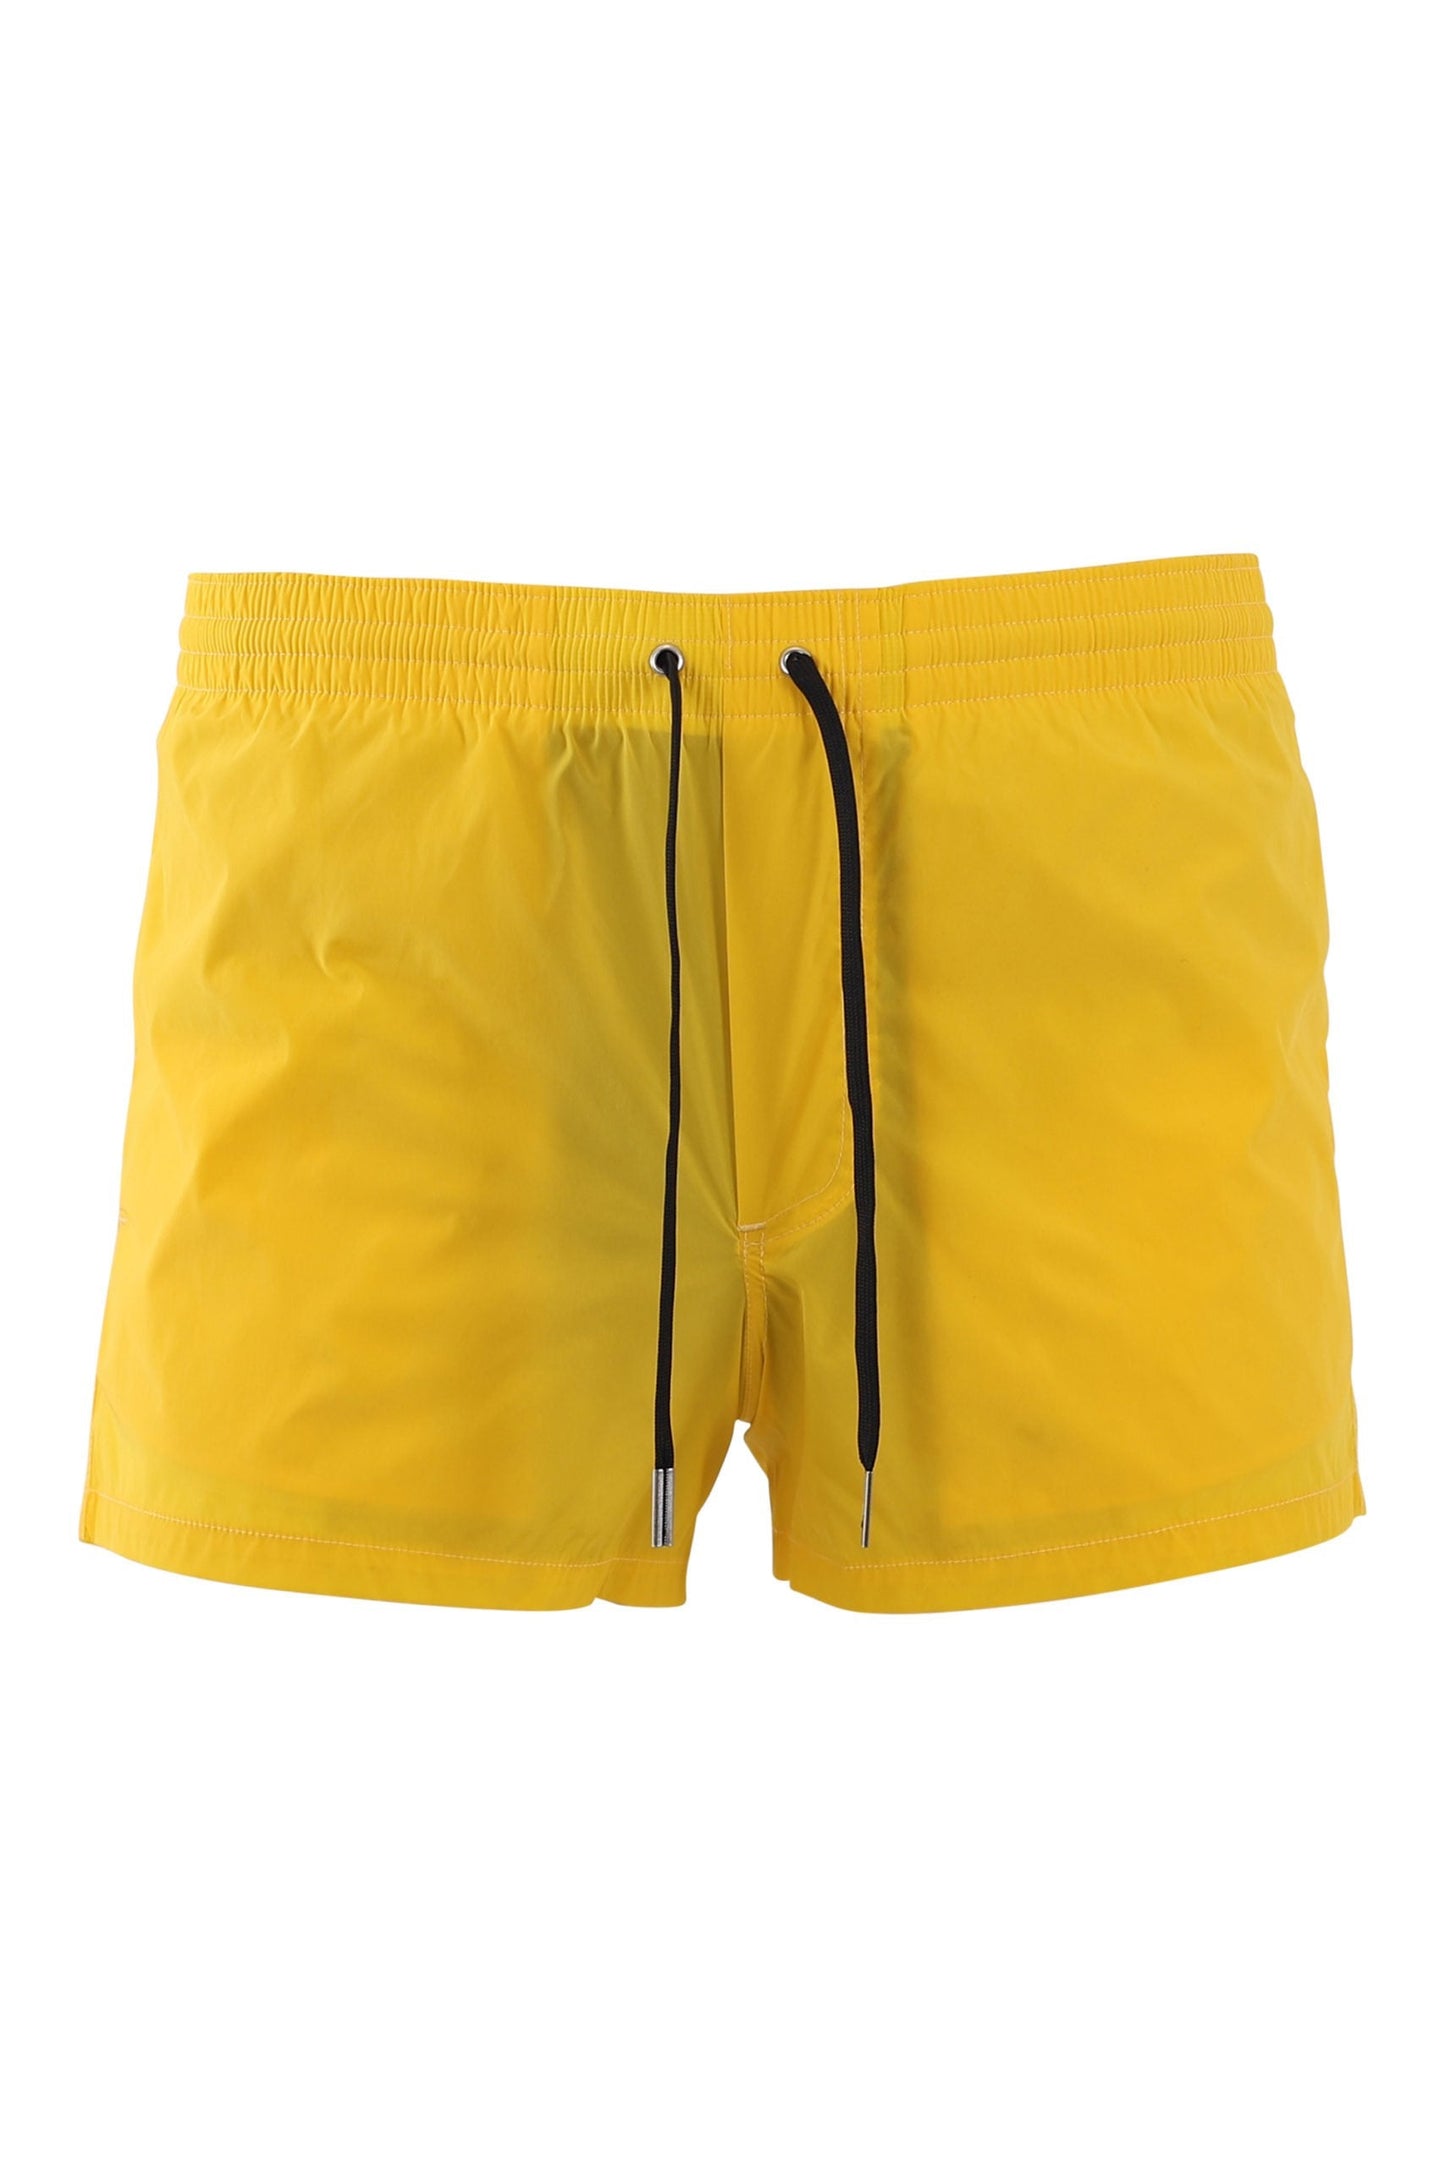 Dsquared2 Ceresio 9 Milano Logo Swim Shorts - 731 Yellow - Escape Menswear